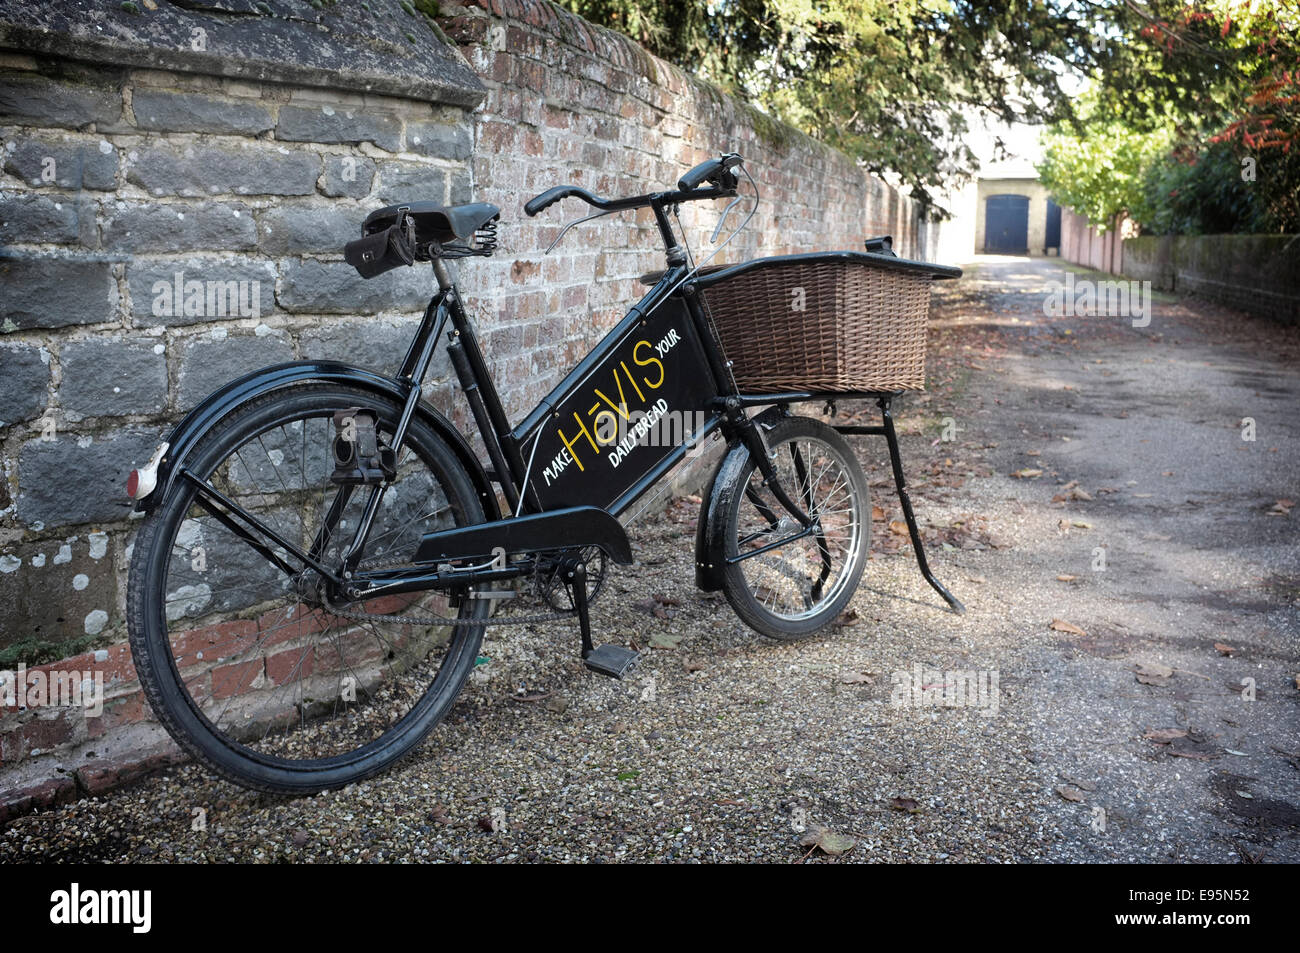 Vintage degli anni trenta bakers (Tradesman's) consegna bicicletta con cesto di vimini e la vecchia insegna la scrittura Hovis ha pannello pubblicitario. Foto Stock